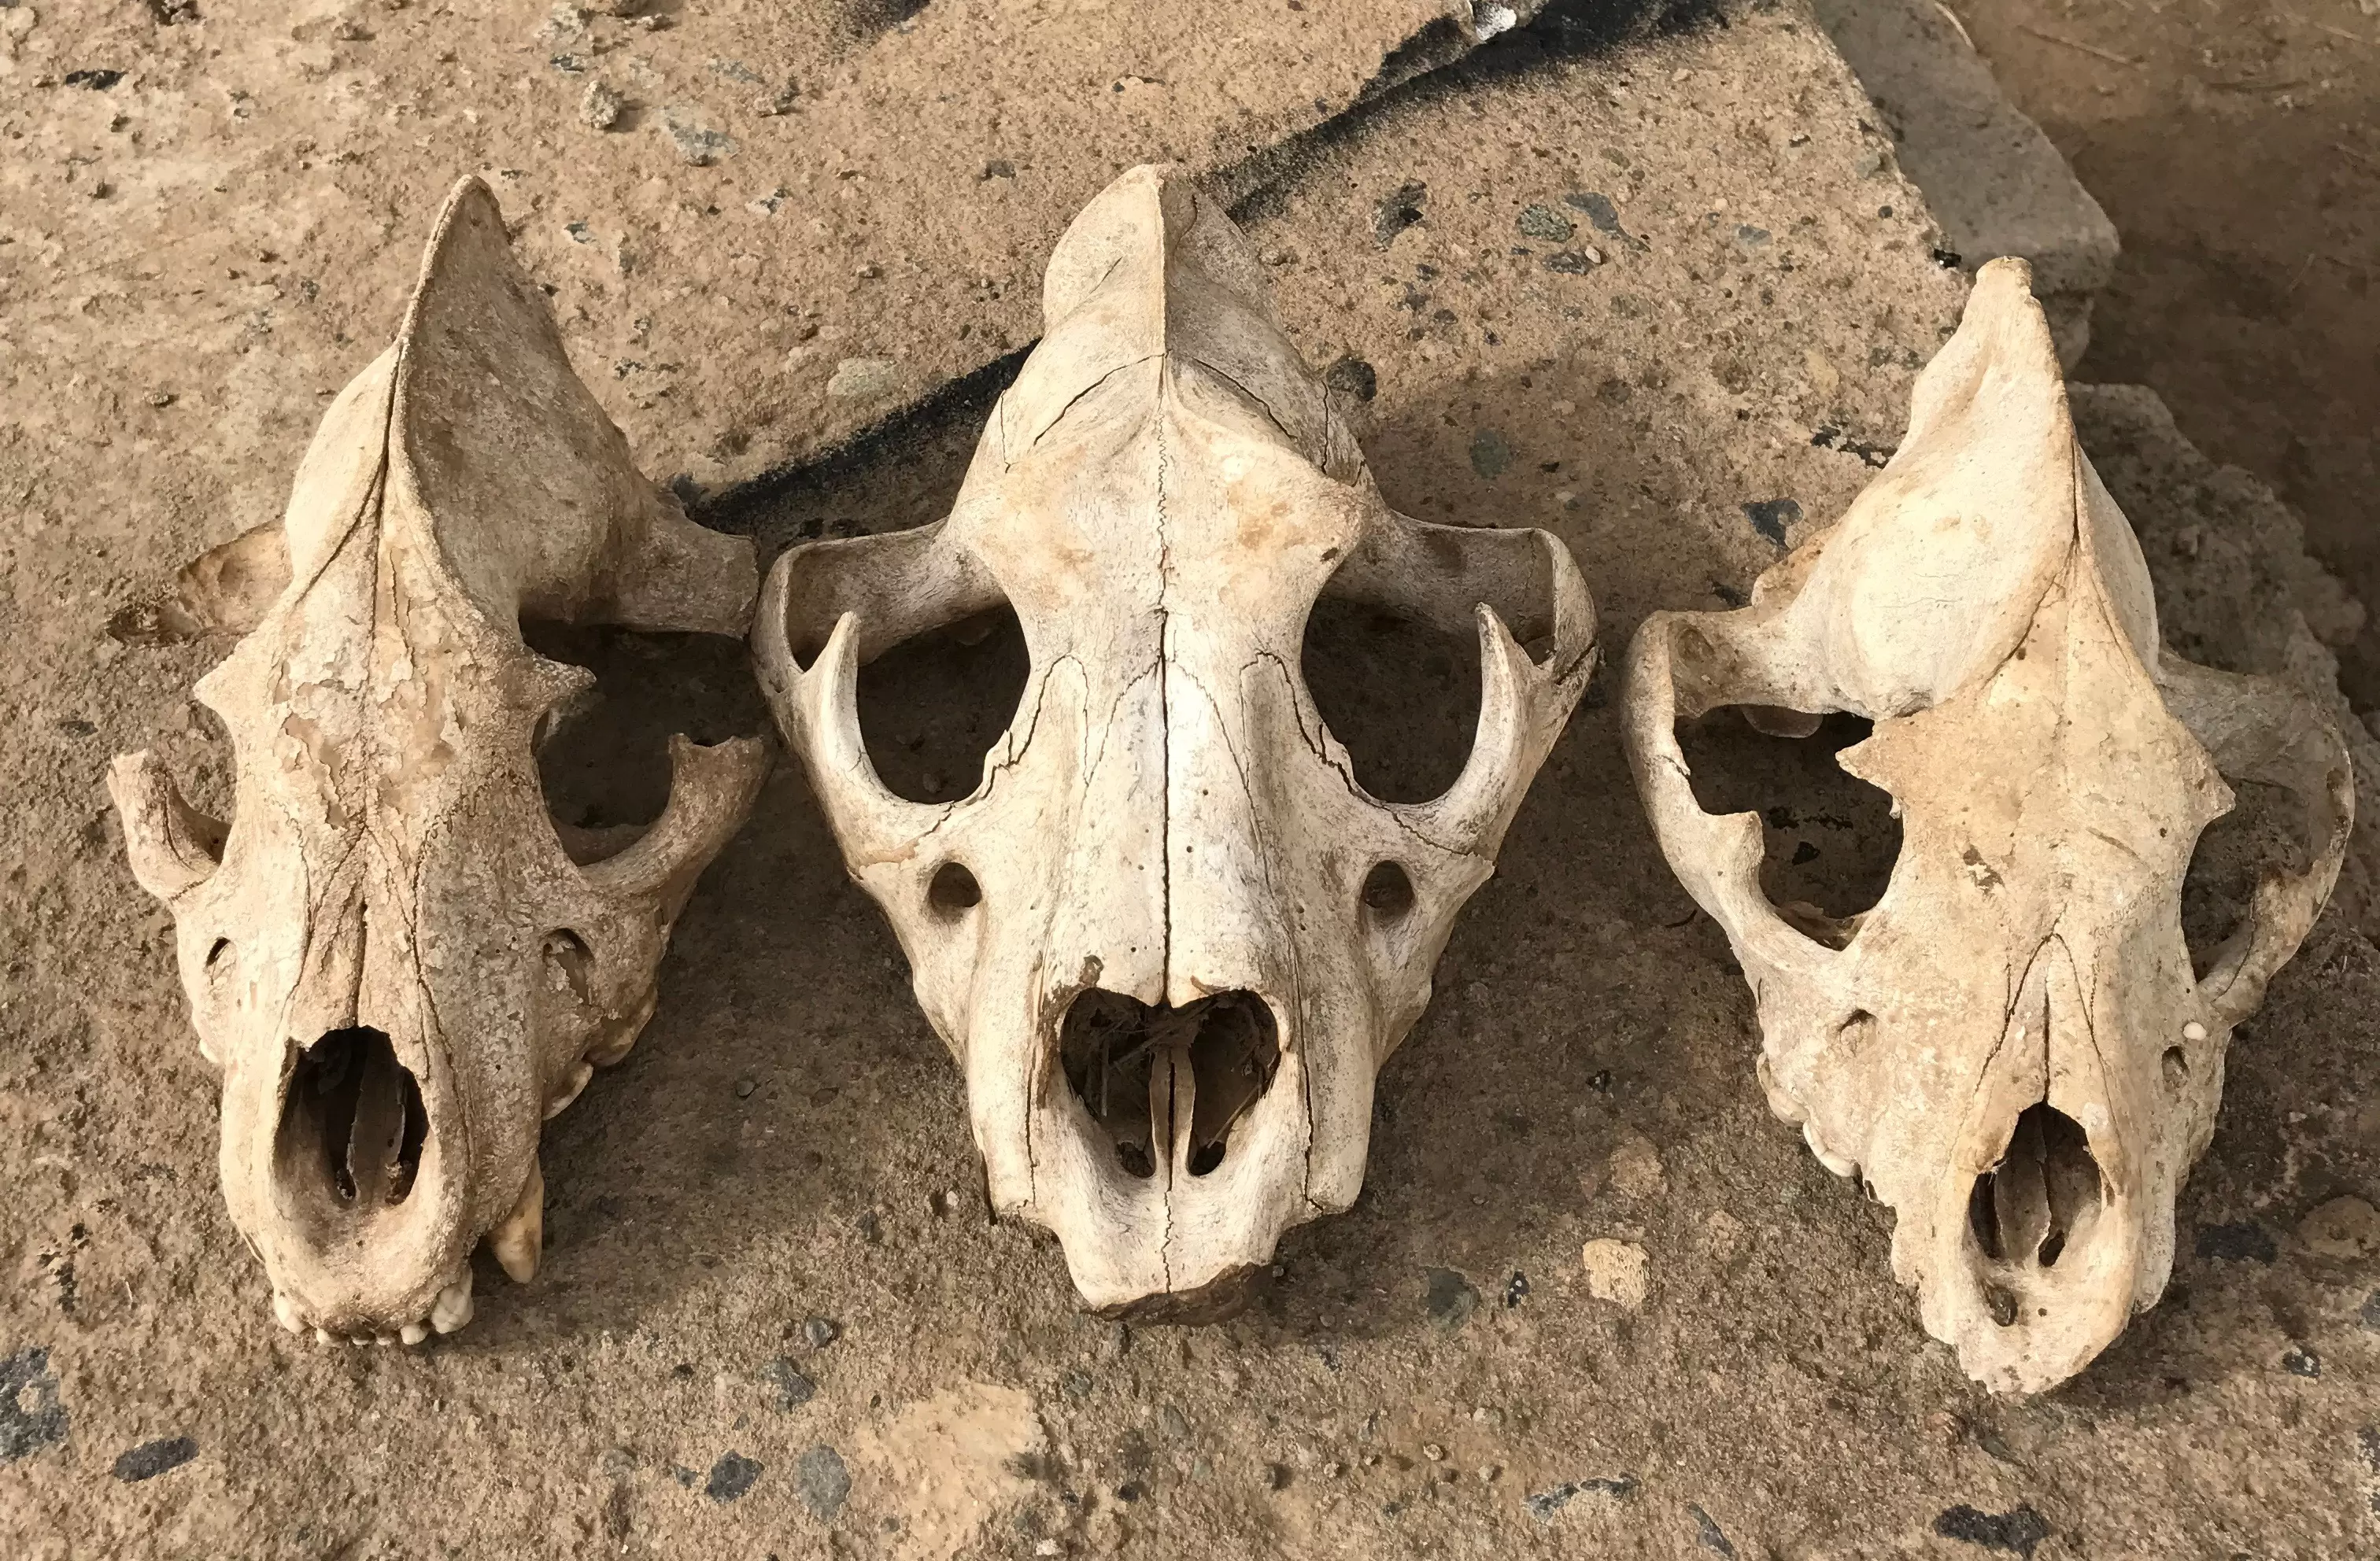 wildlife conservation in ethiopia 3 skulls